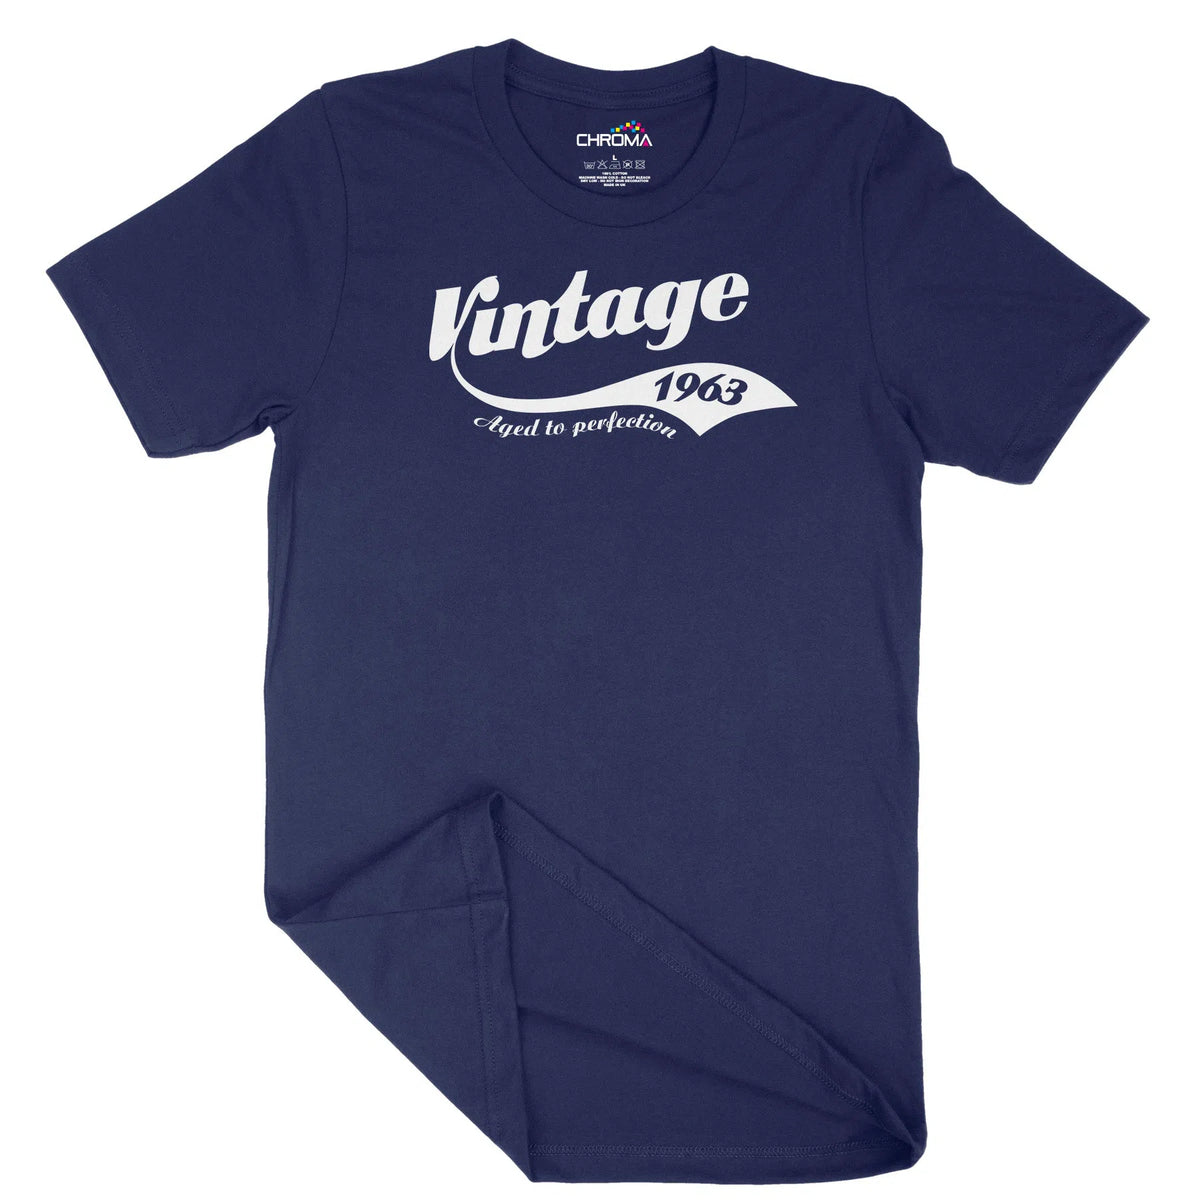 Vintage 1963 Unisex Adult T-Shirt Chroma Clothing